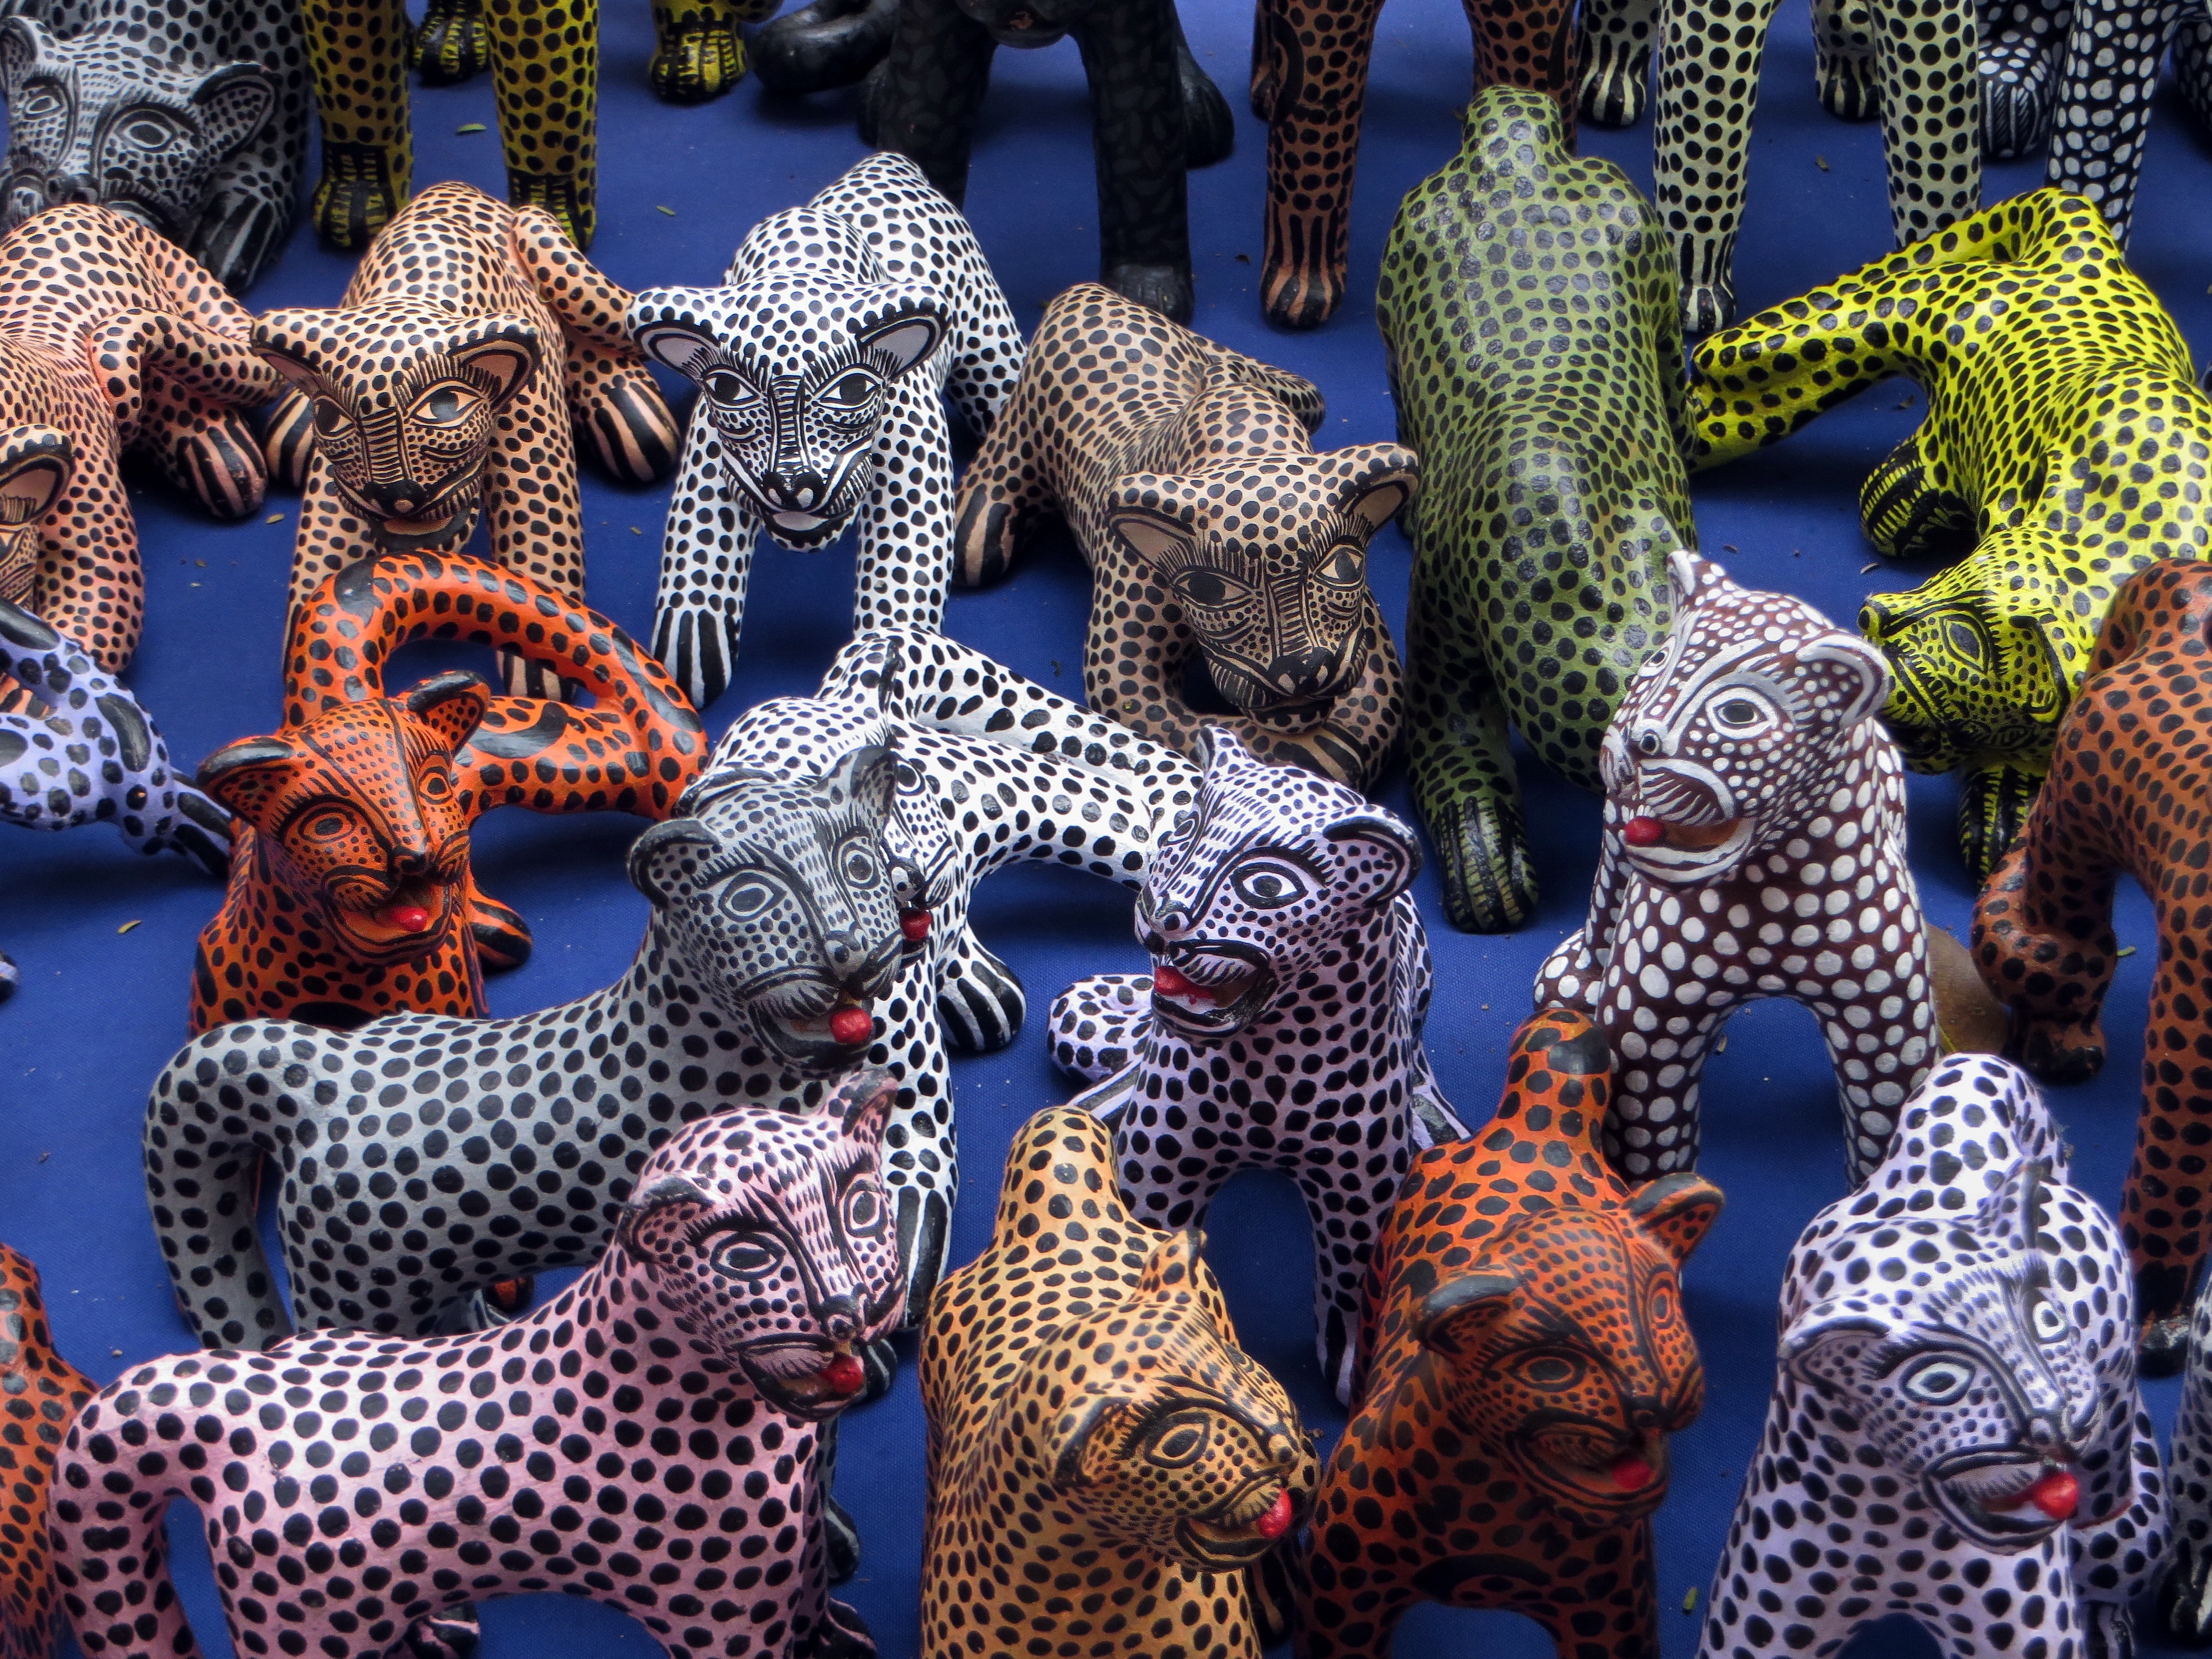 animals ceramic figurines